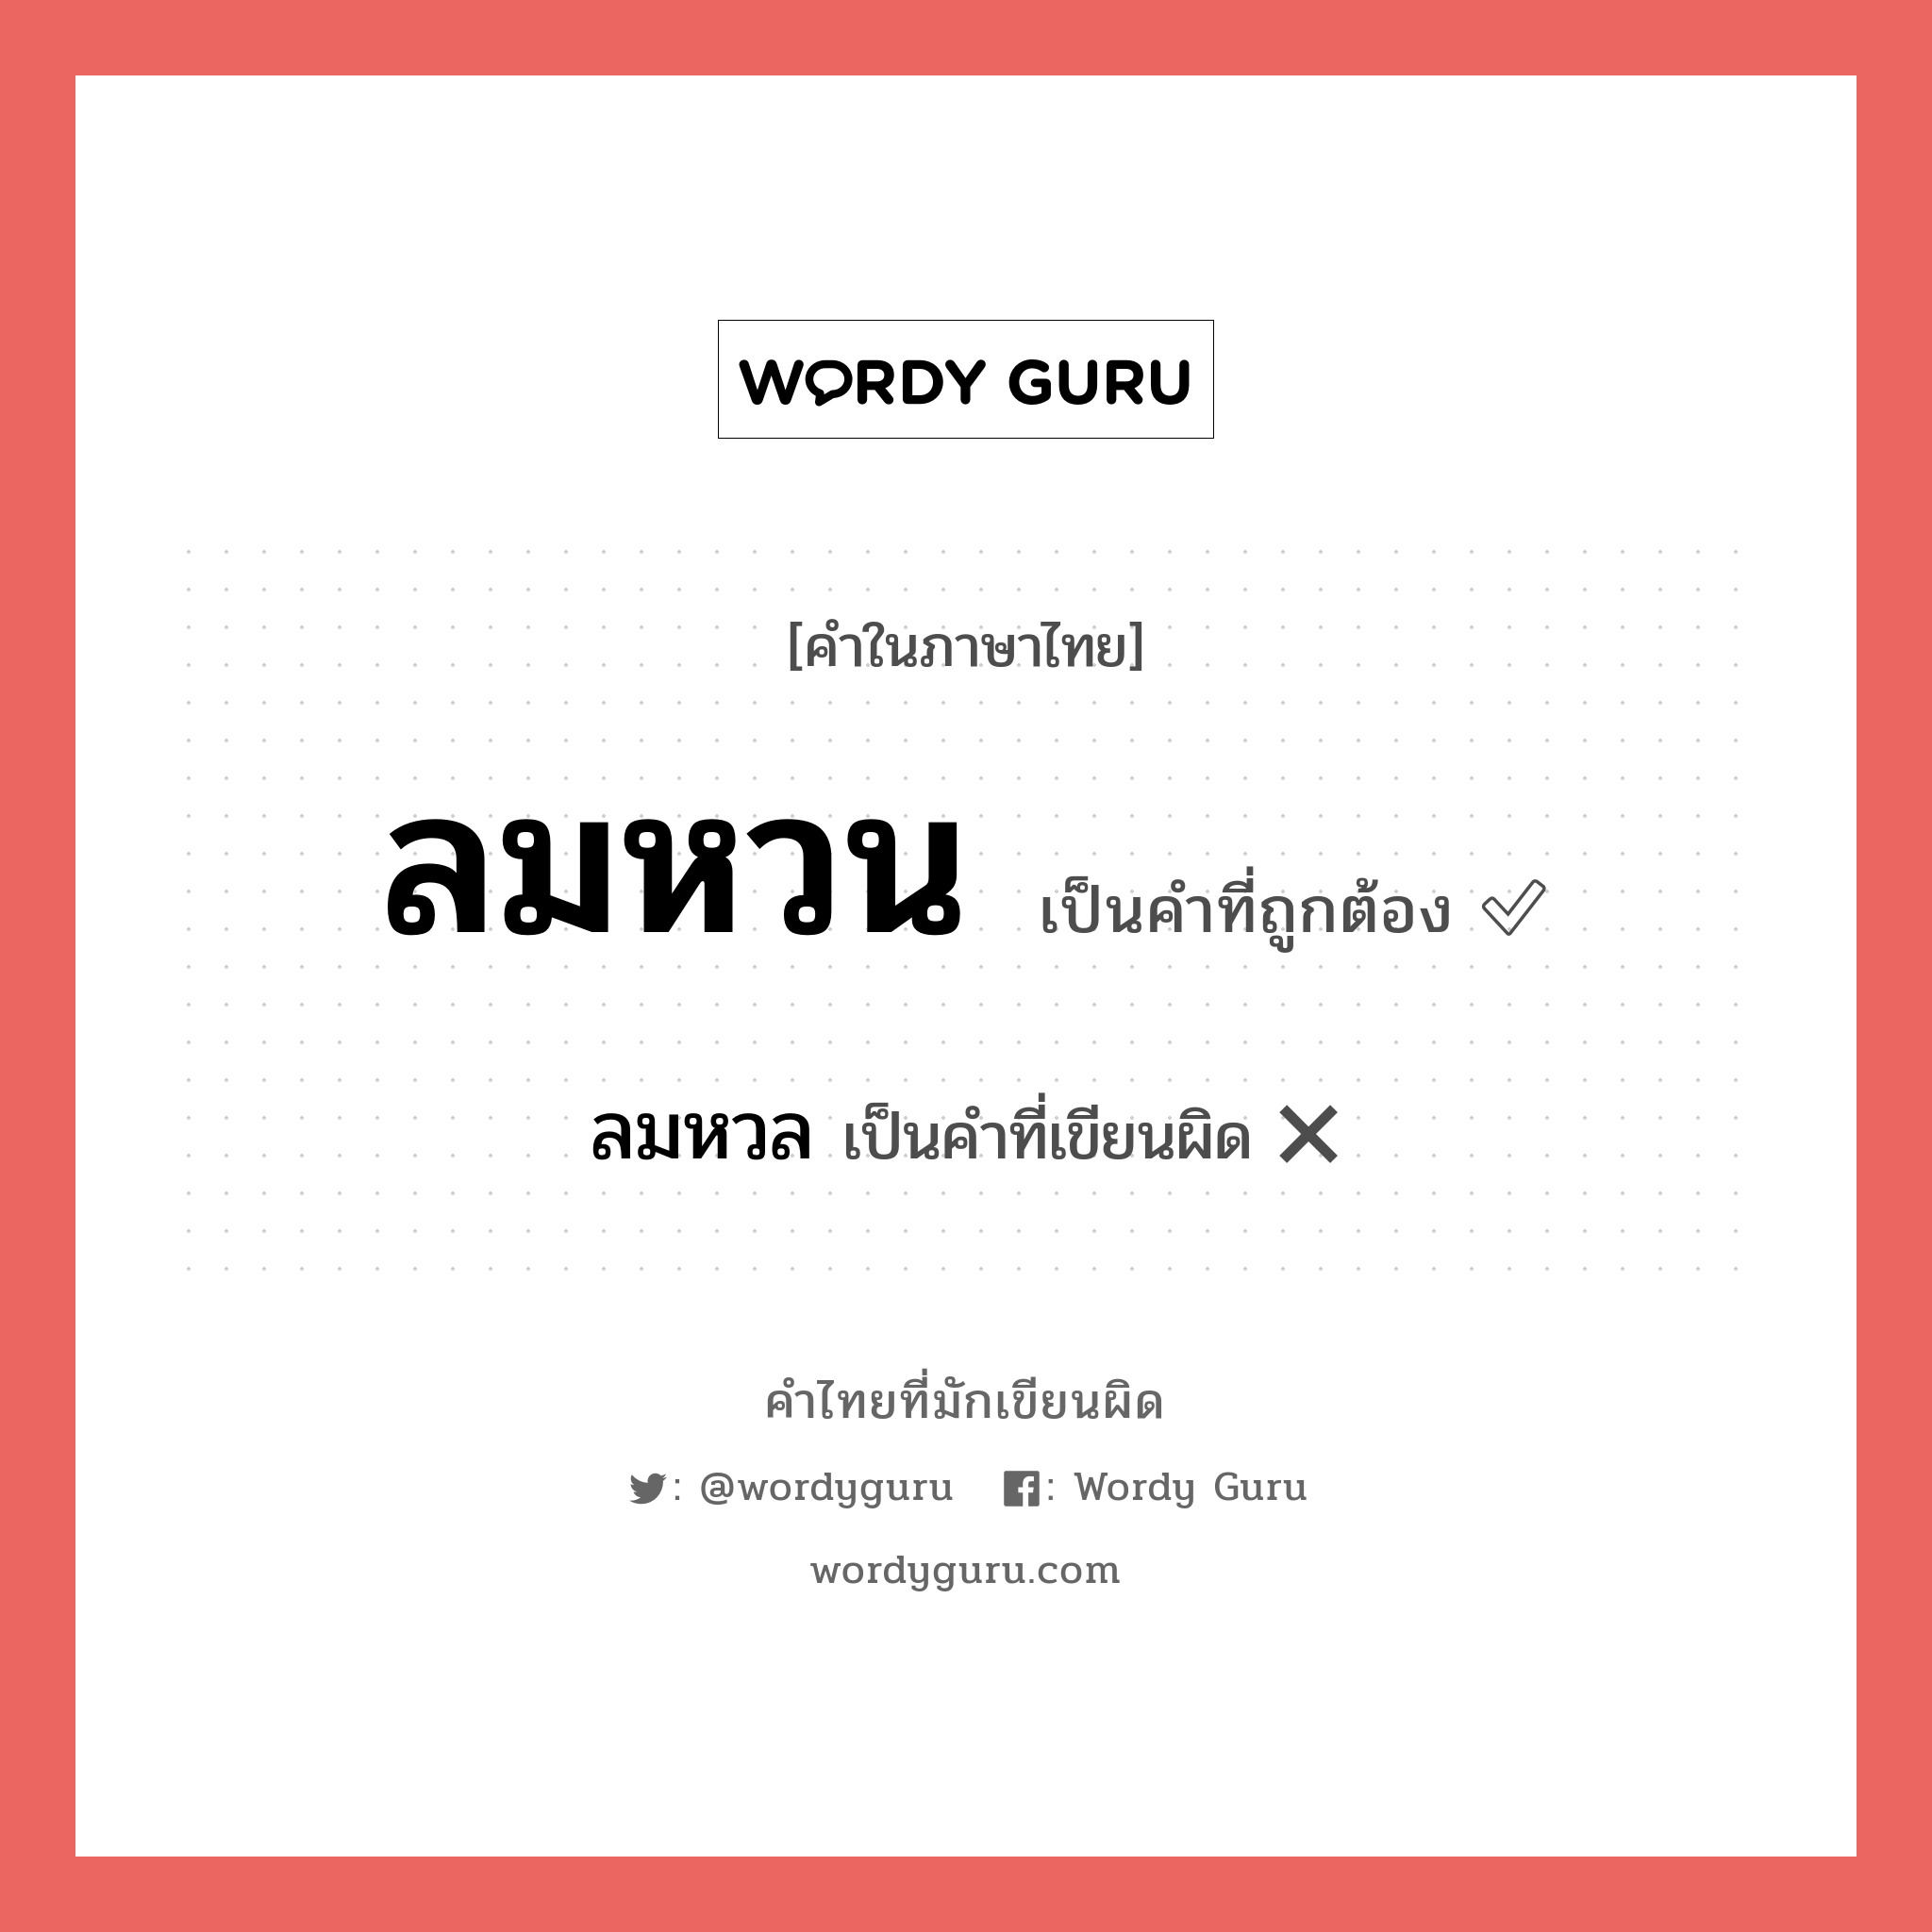 ลมหวล หรือ ลมหวน คำไหนเขียนถูก?, คำในภาษาไทยที่มักเขียนผิด ลมหวล คำที่ผิด ❌ ลมหวน